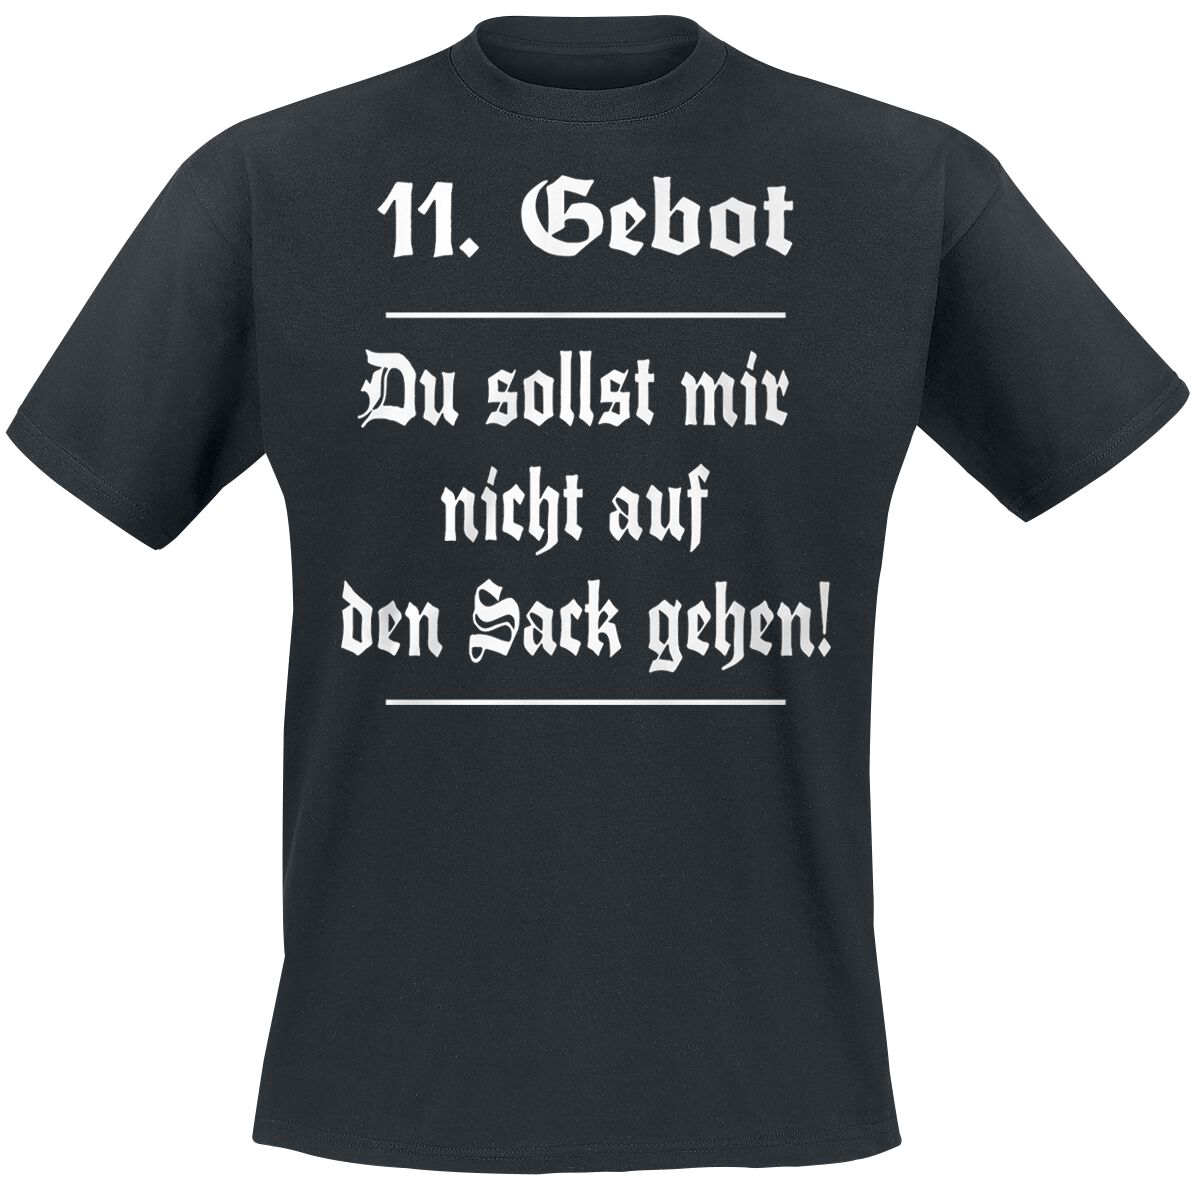 Sprüche T-Shirt - 11. Gebot - S bis 5XL - für Männer - Größe XXL - schwarz